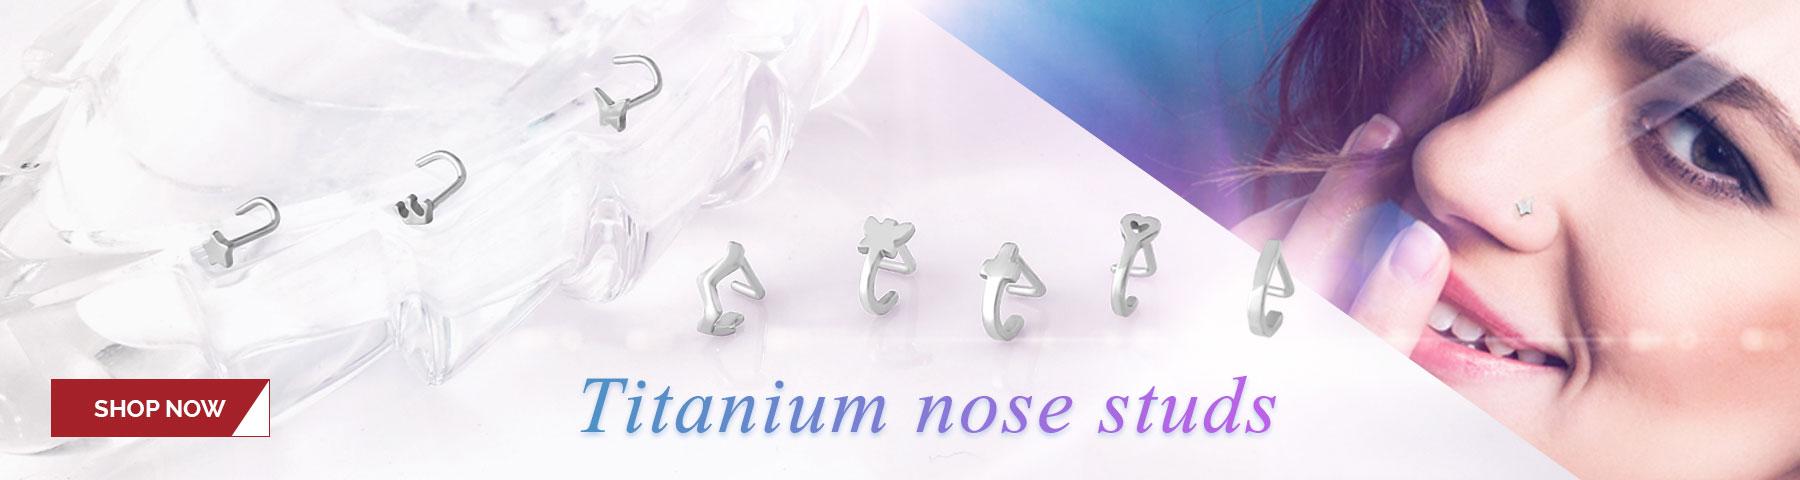 Titanium nose studs and wraps